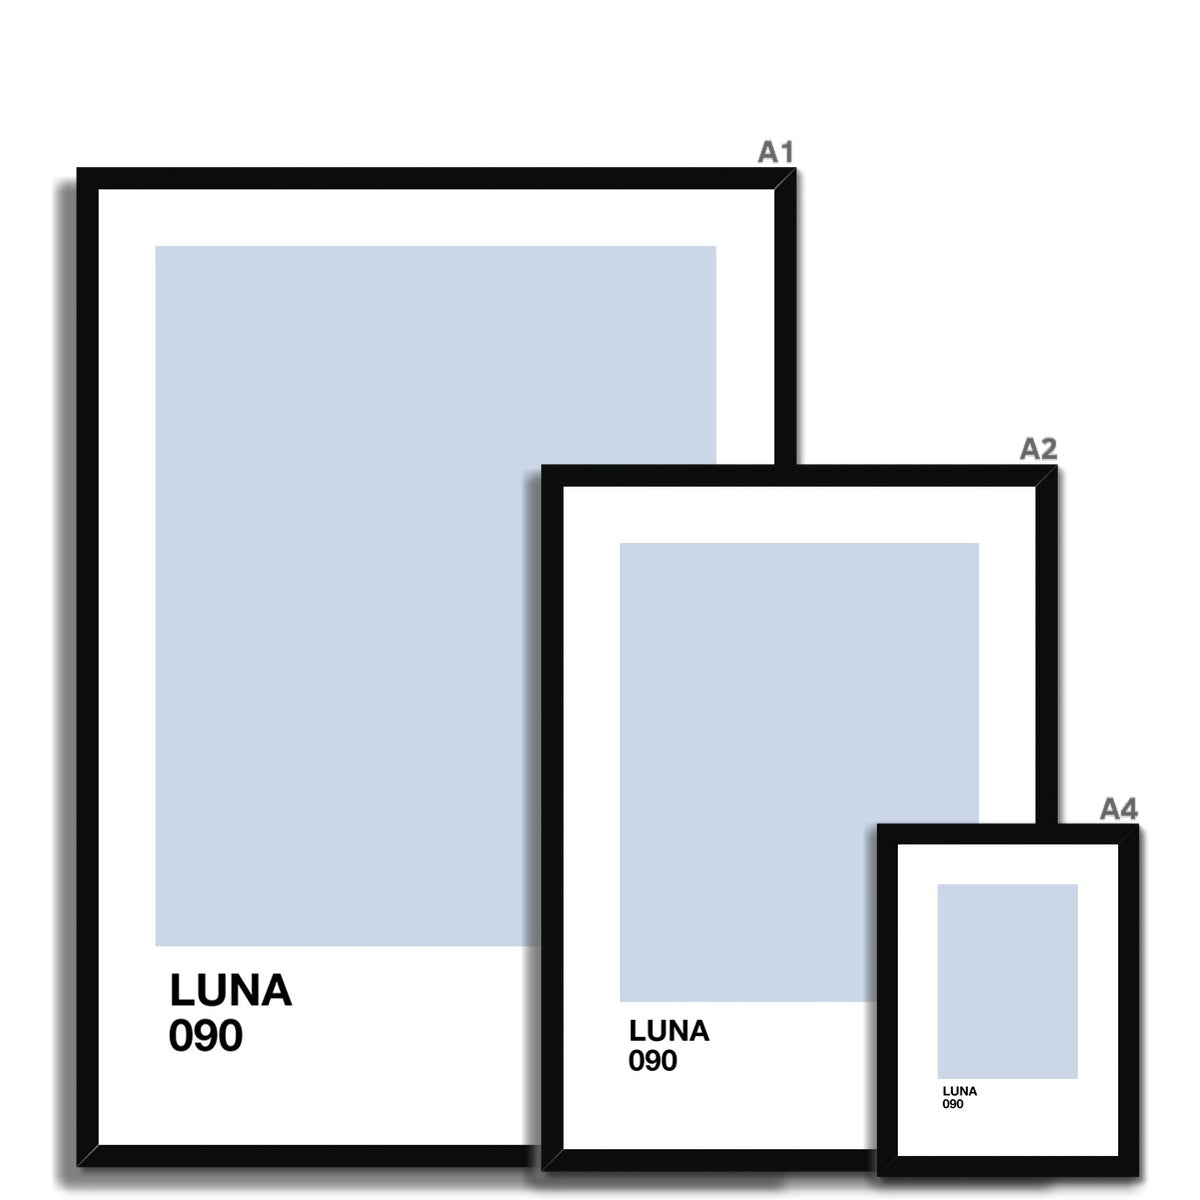 luna Framed & Mounted Print